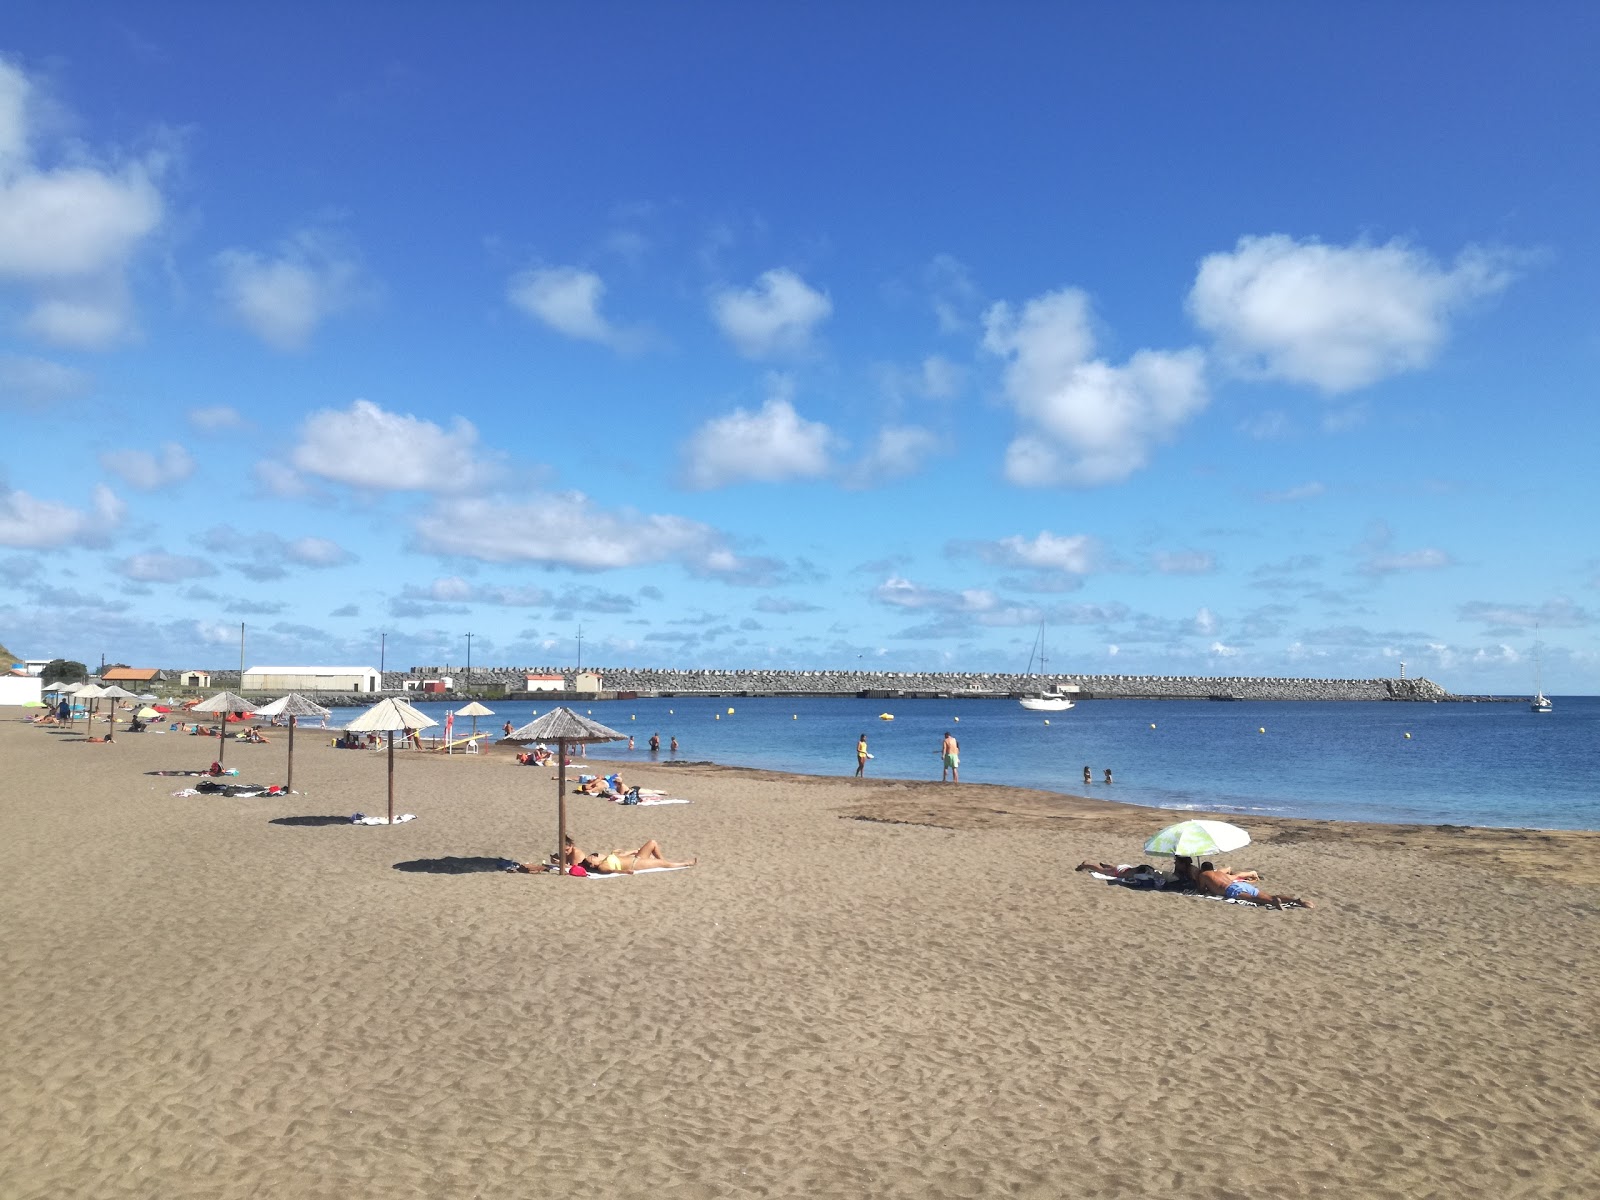 Praia da Vitoria的照片 带有灰沙表面